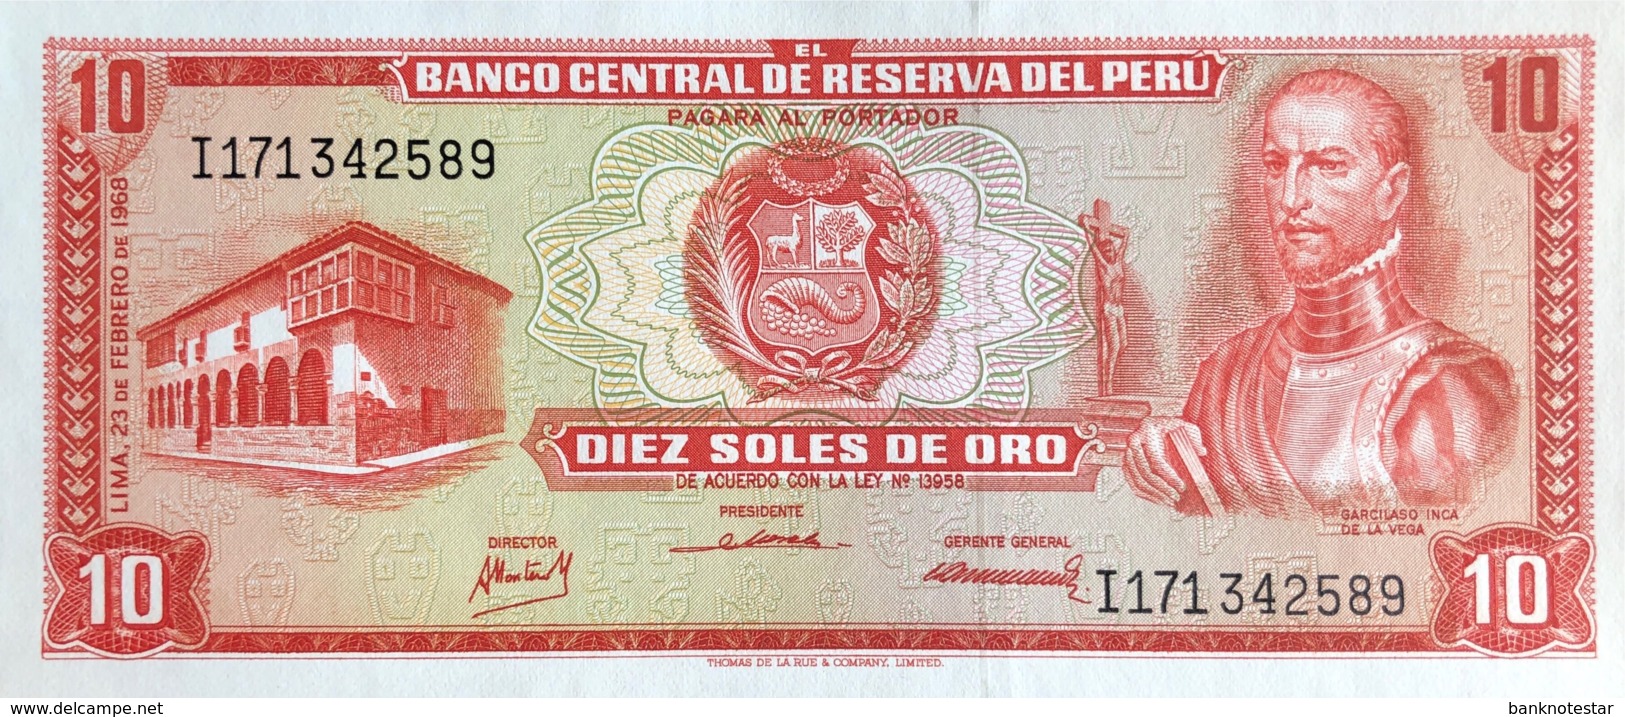 Peru 10 Soles De Oro, P-93 (23.2.1968) - UNC - Peru